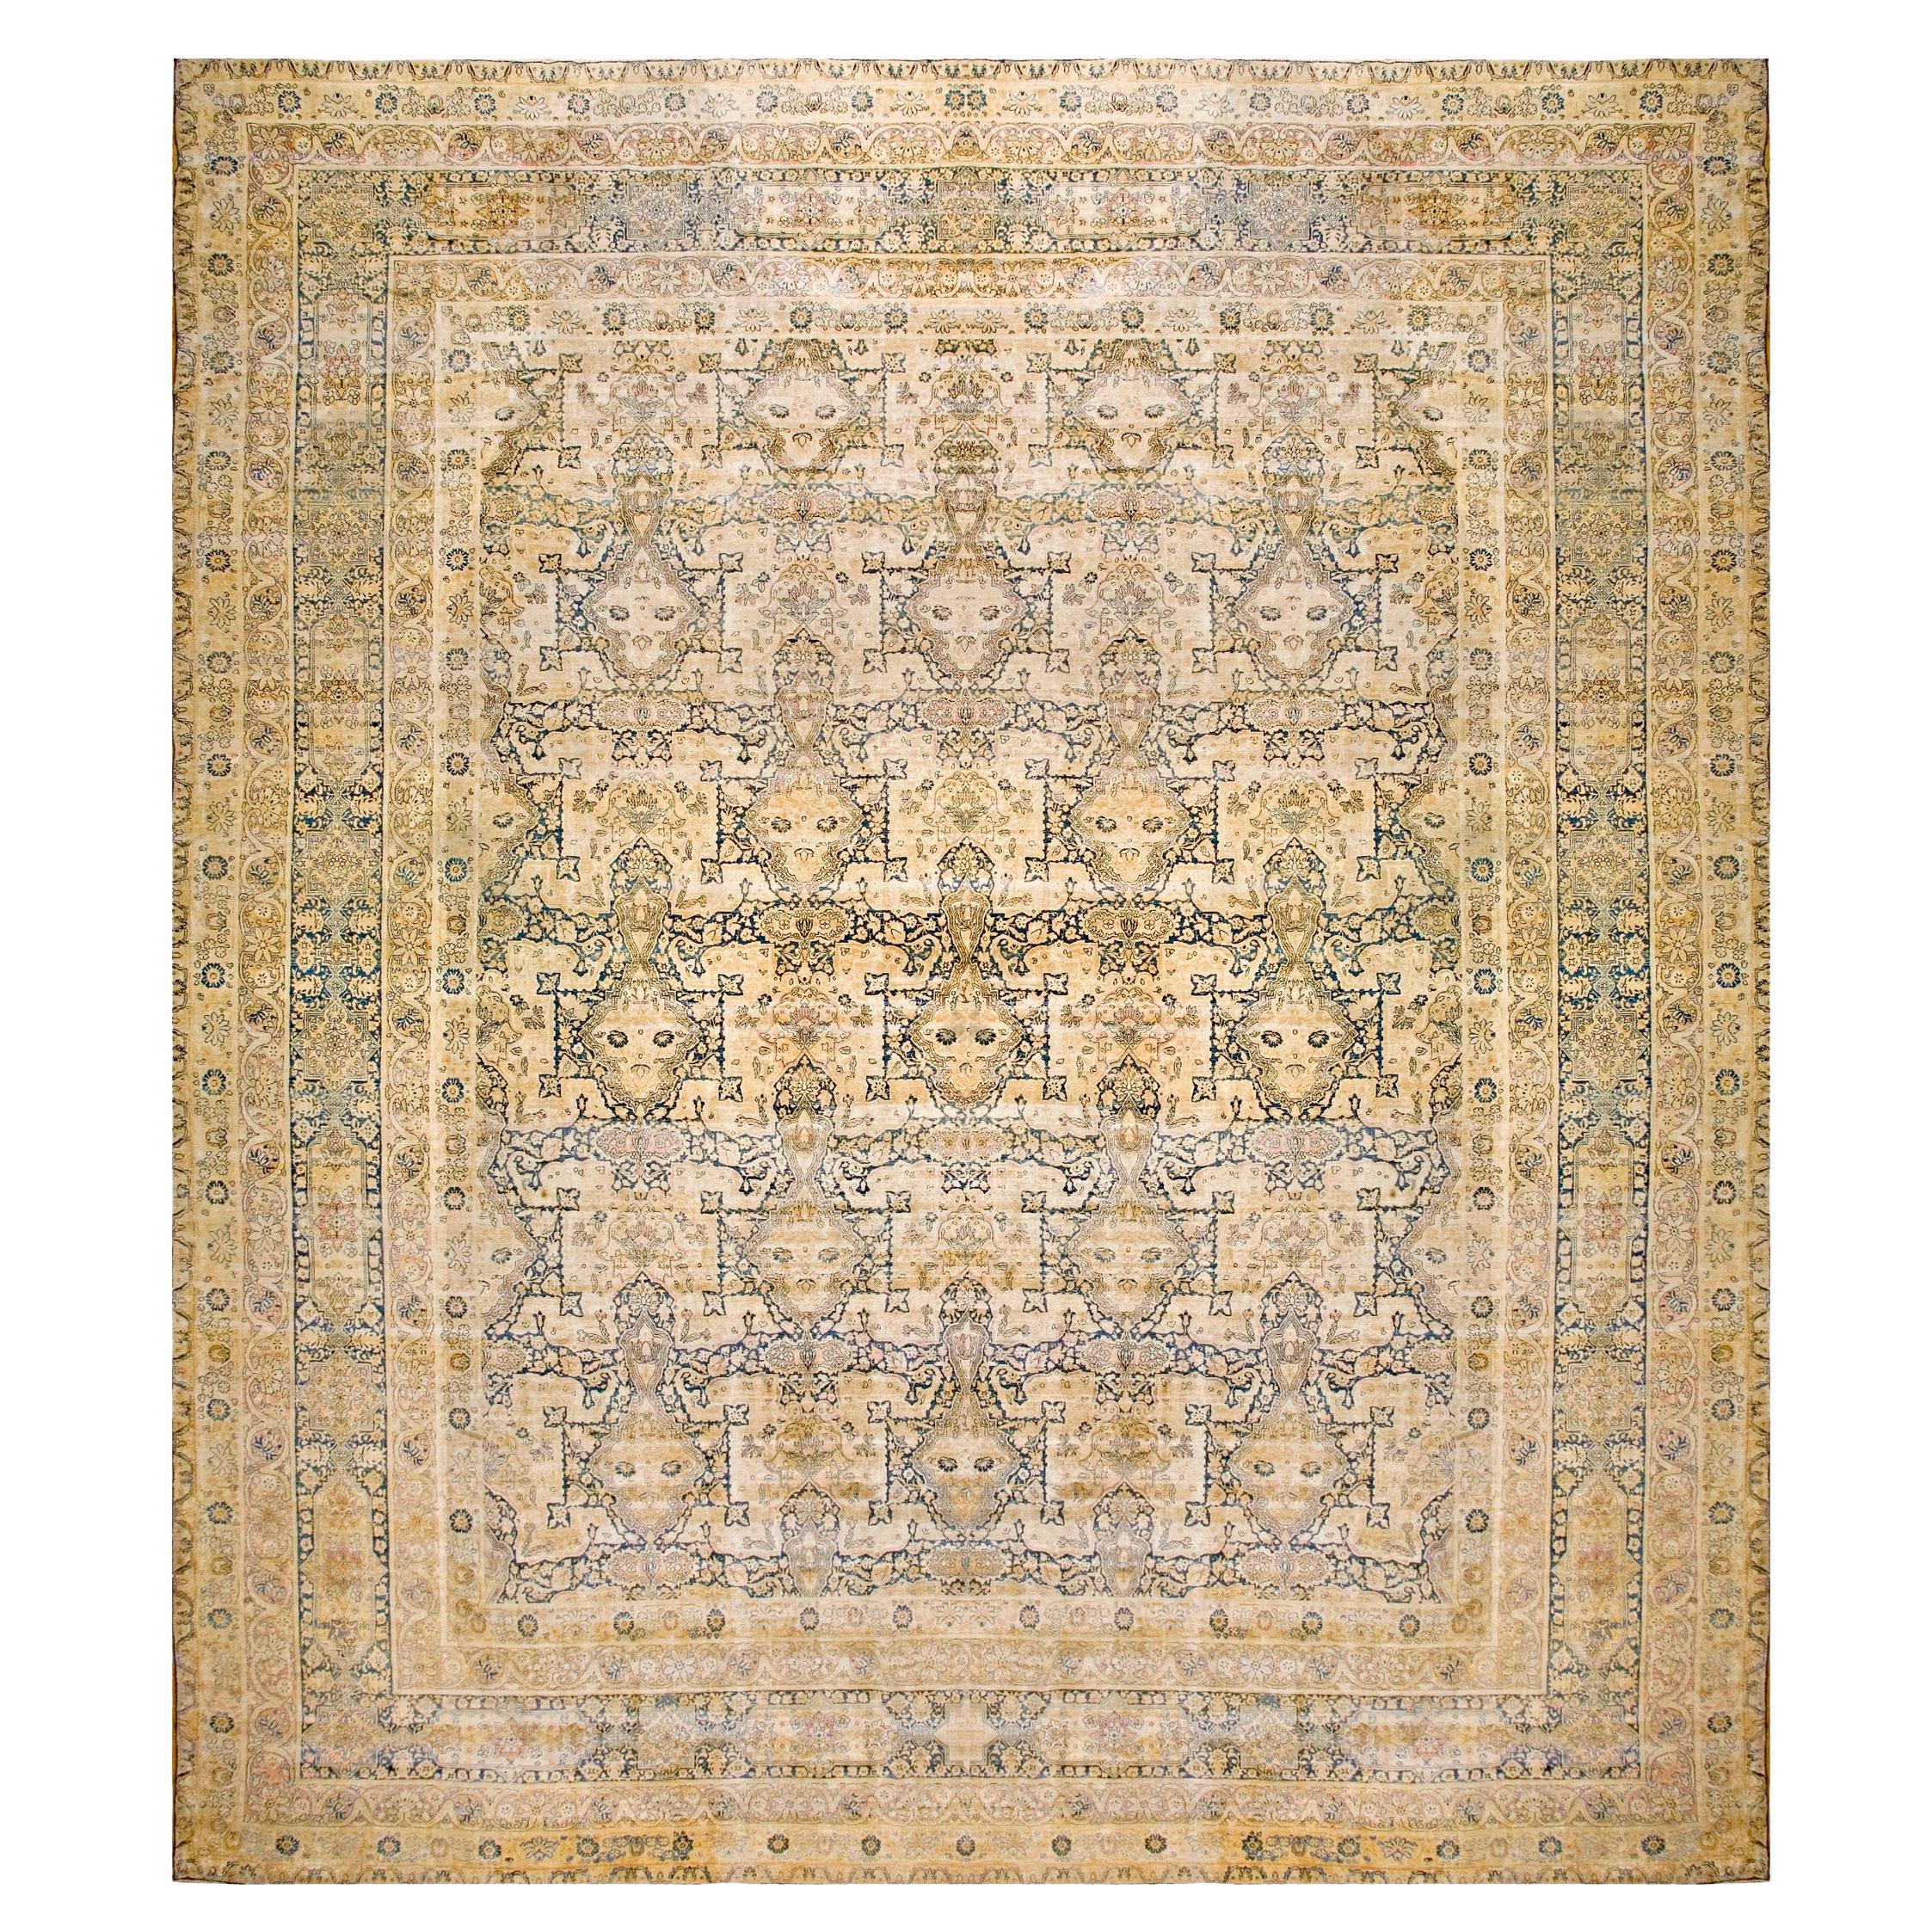 19th Century S.E. Persian Kerman Laver Carpet ( 17' x 19'10" - 518 x 605 )